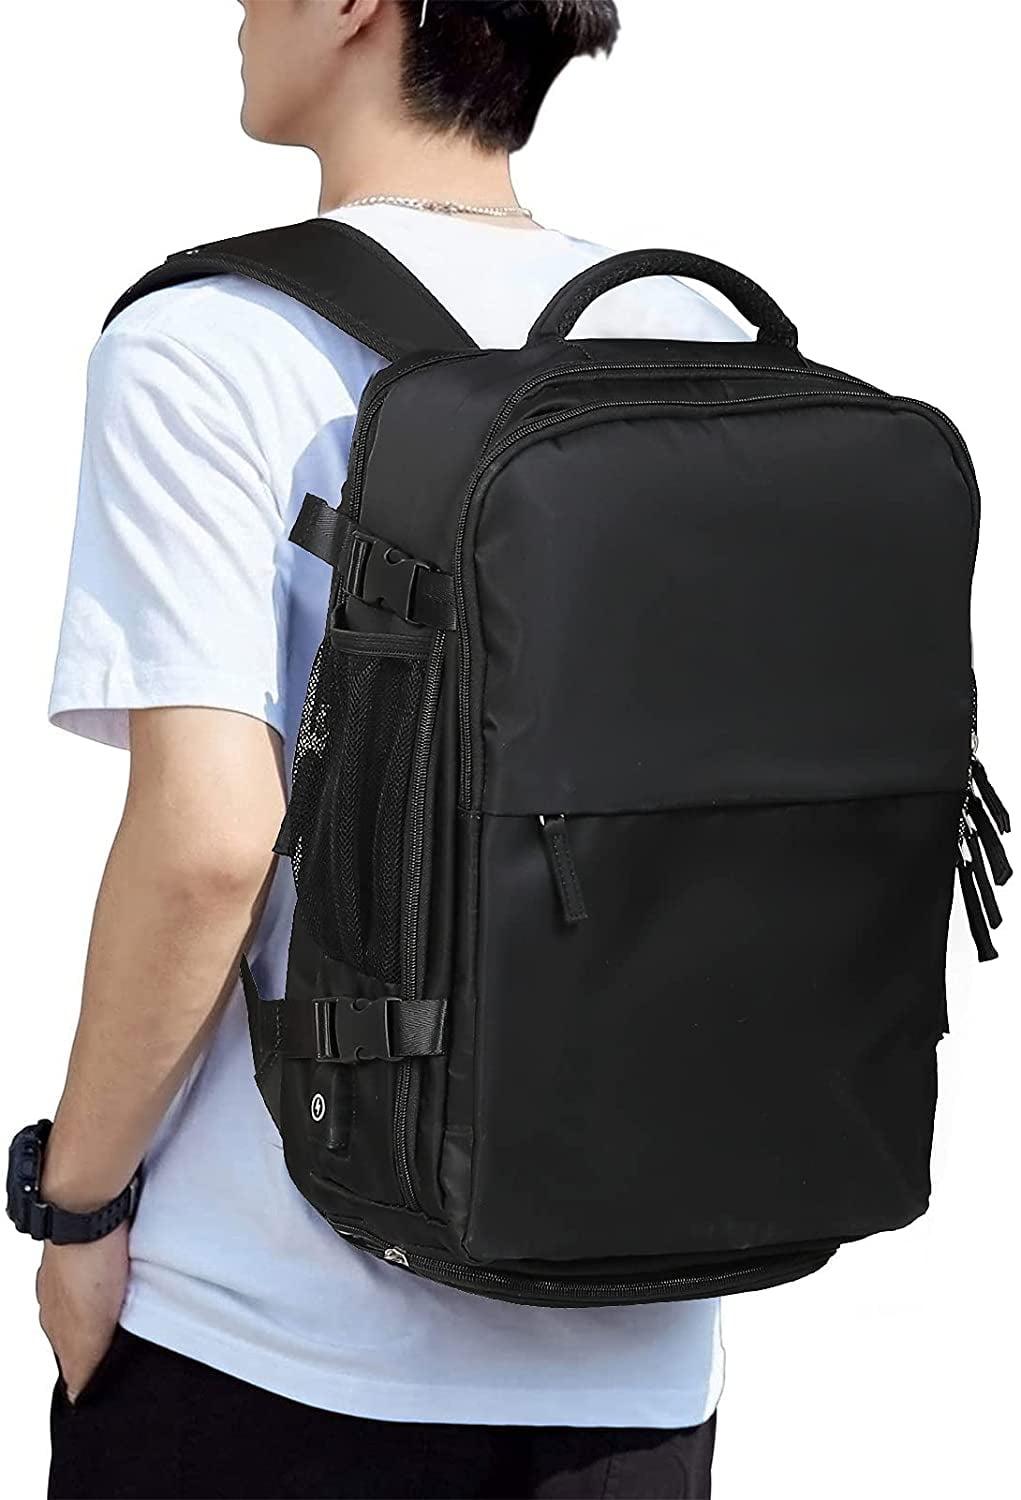 hycoo travel duffel bag